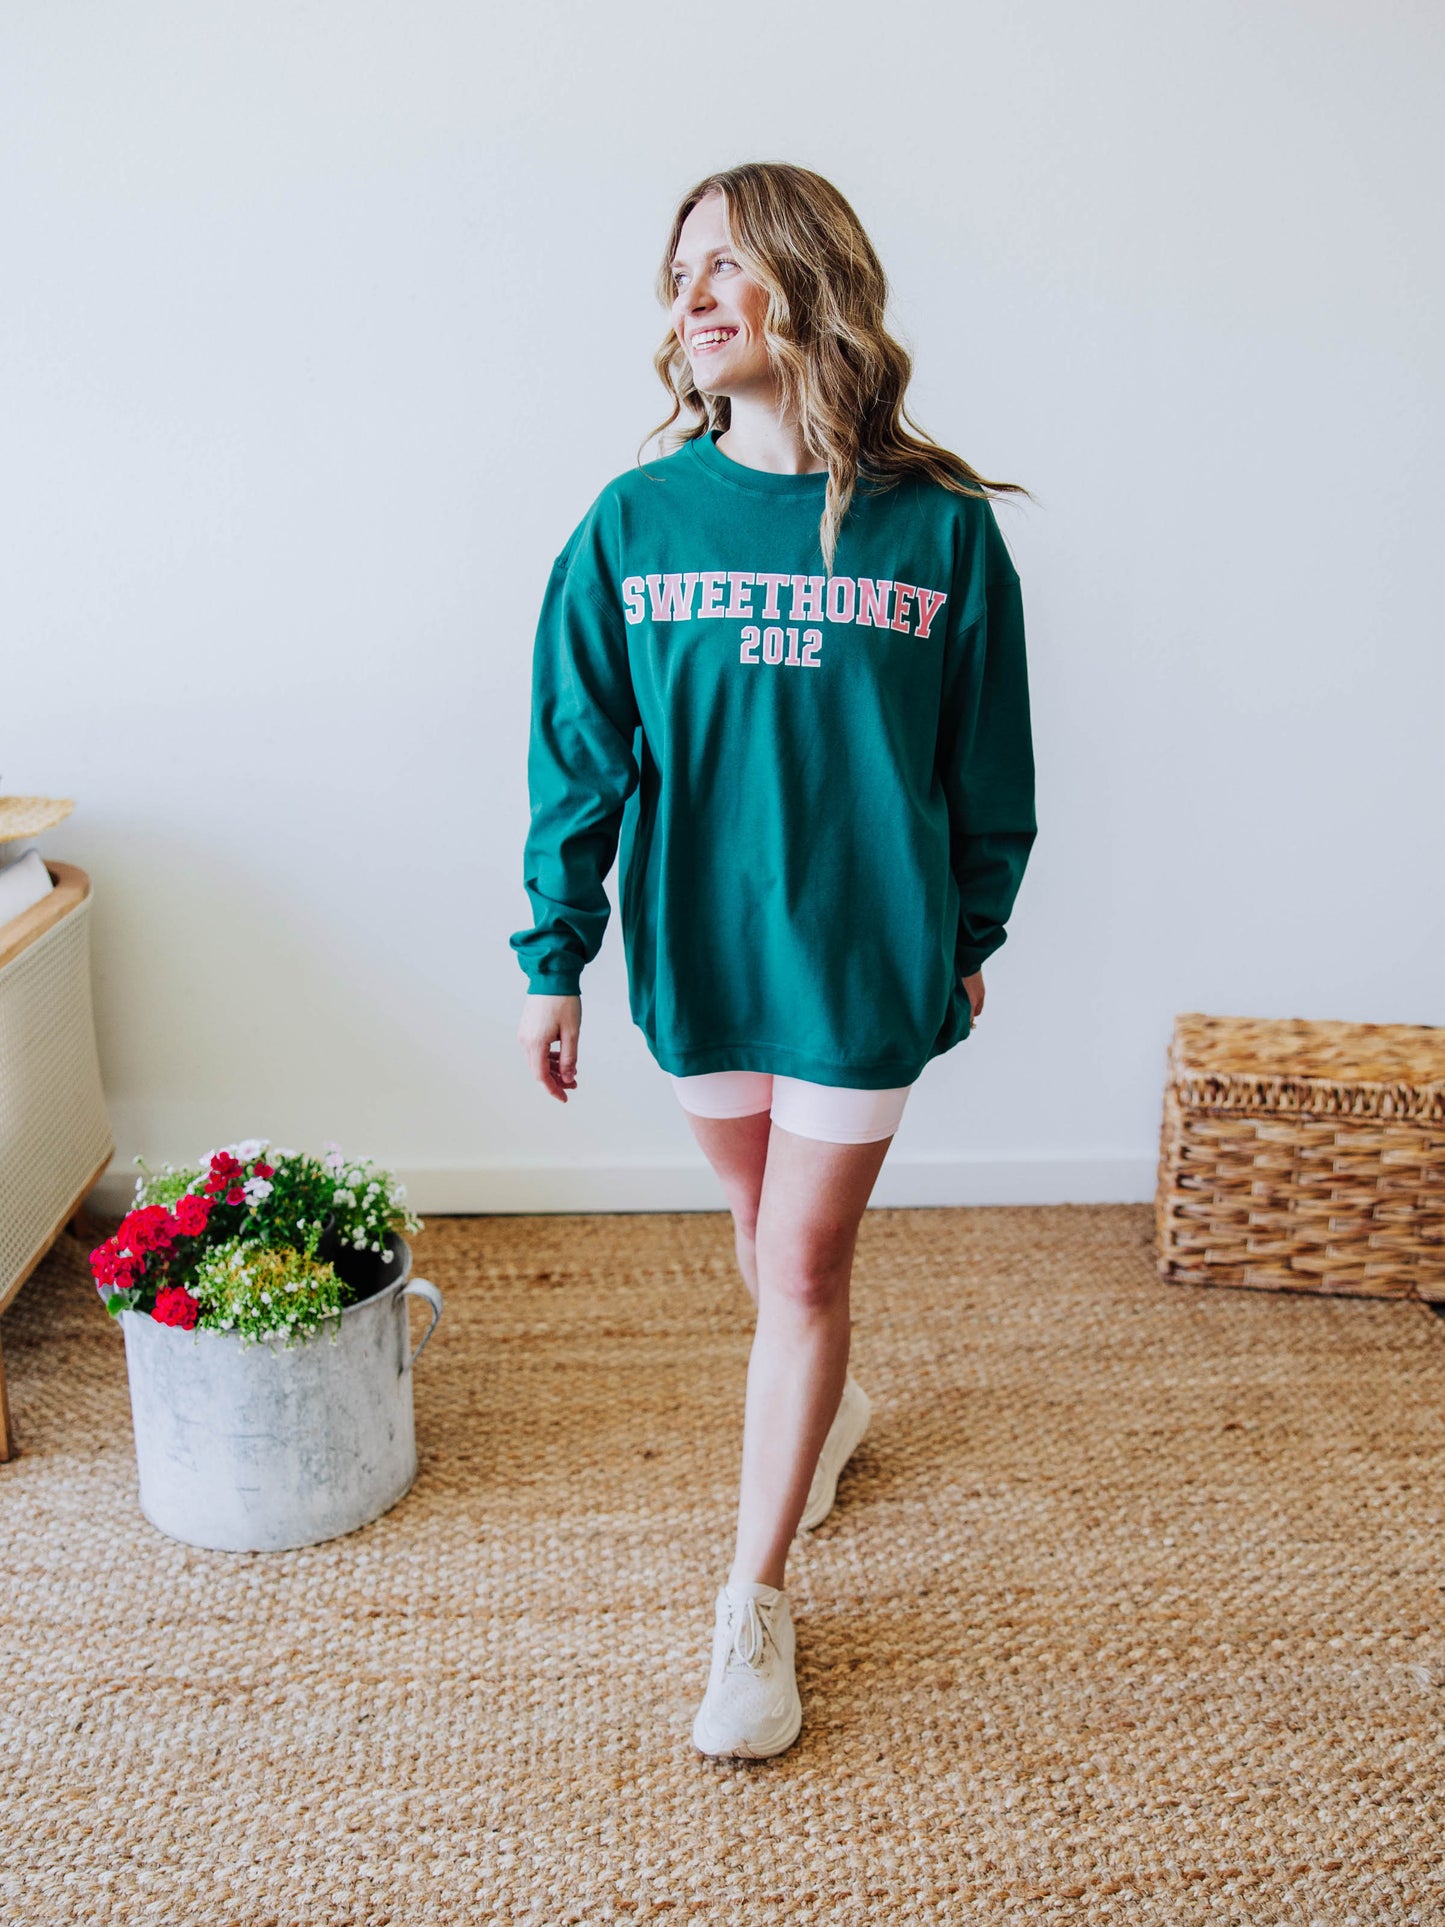 Women's Warm Knit Sweatshirt - SweetHoney Sea Green